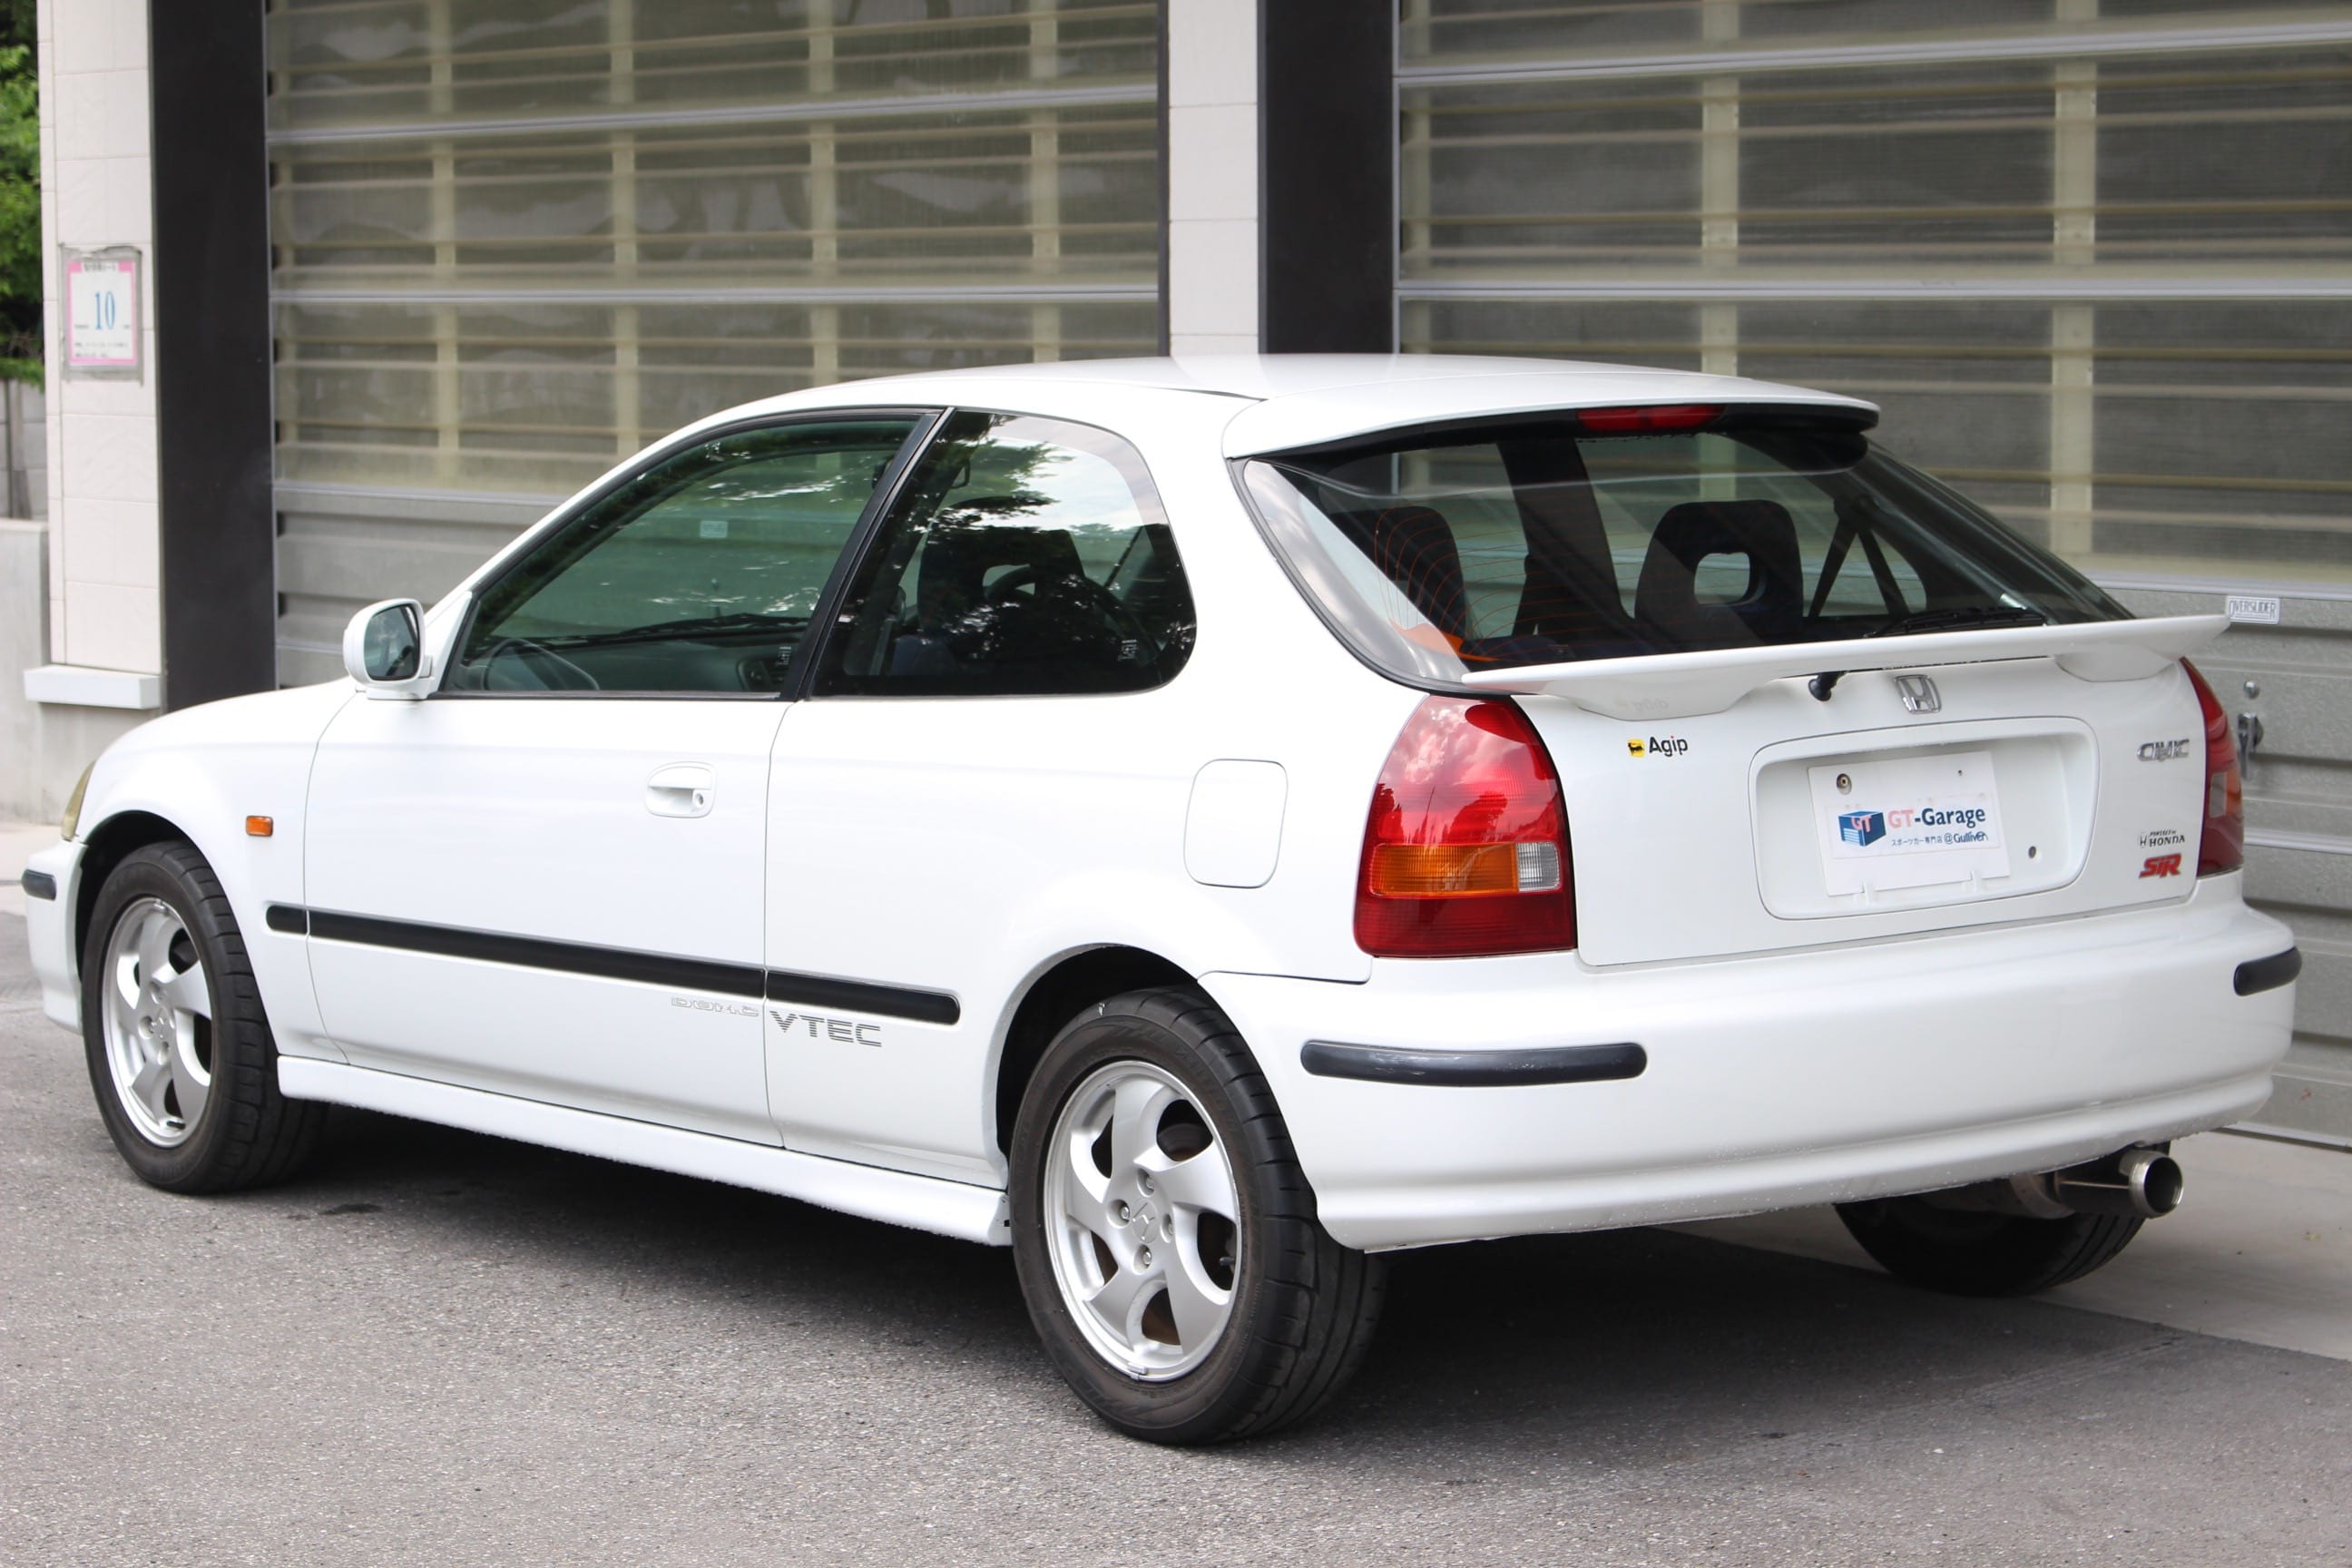 Honda Civic Hatchback 1997  gt-garage